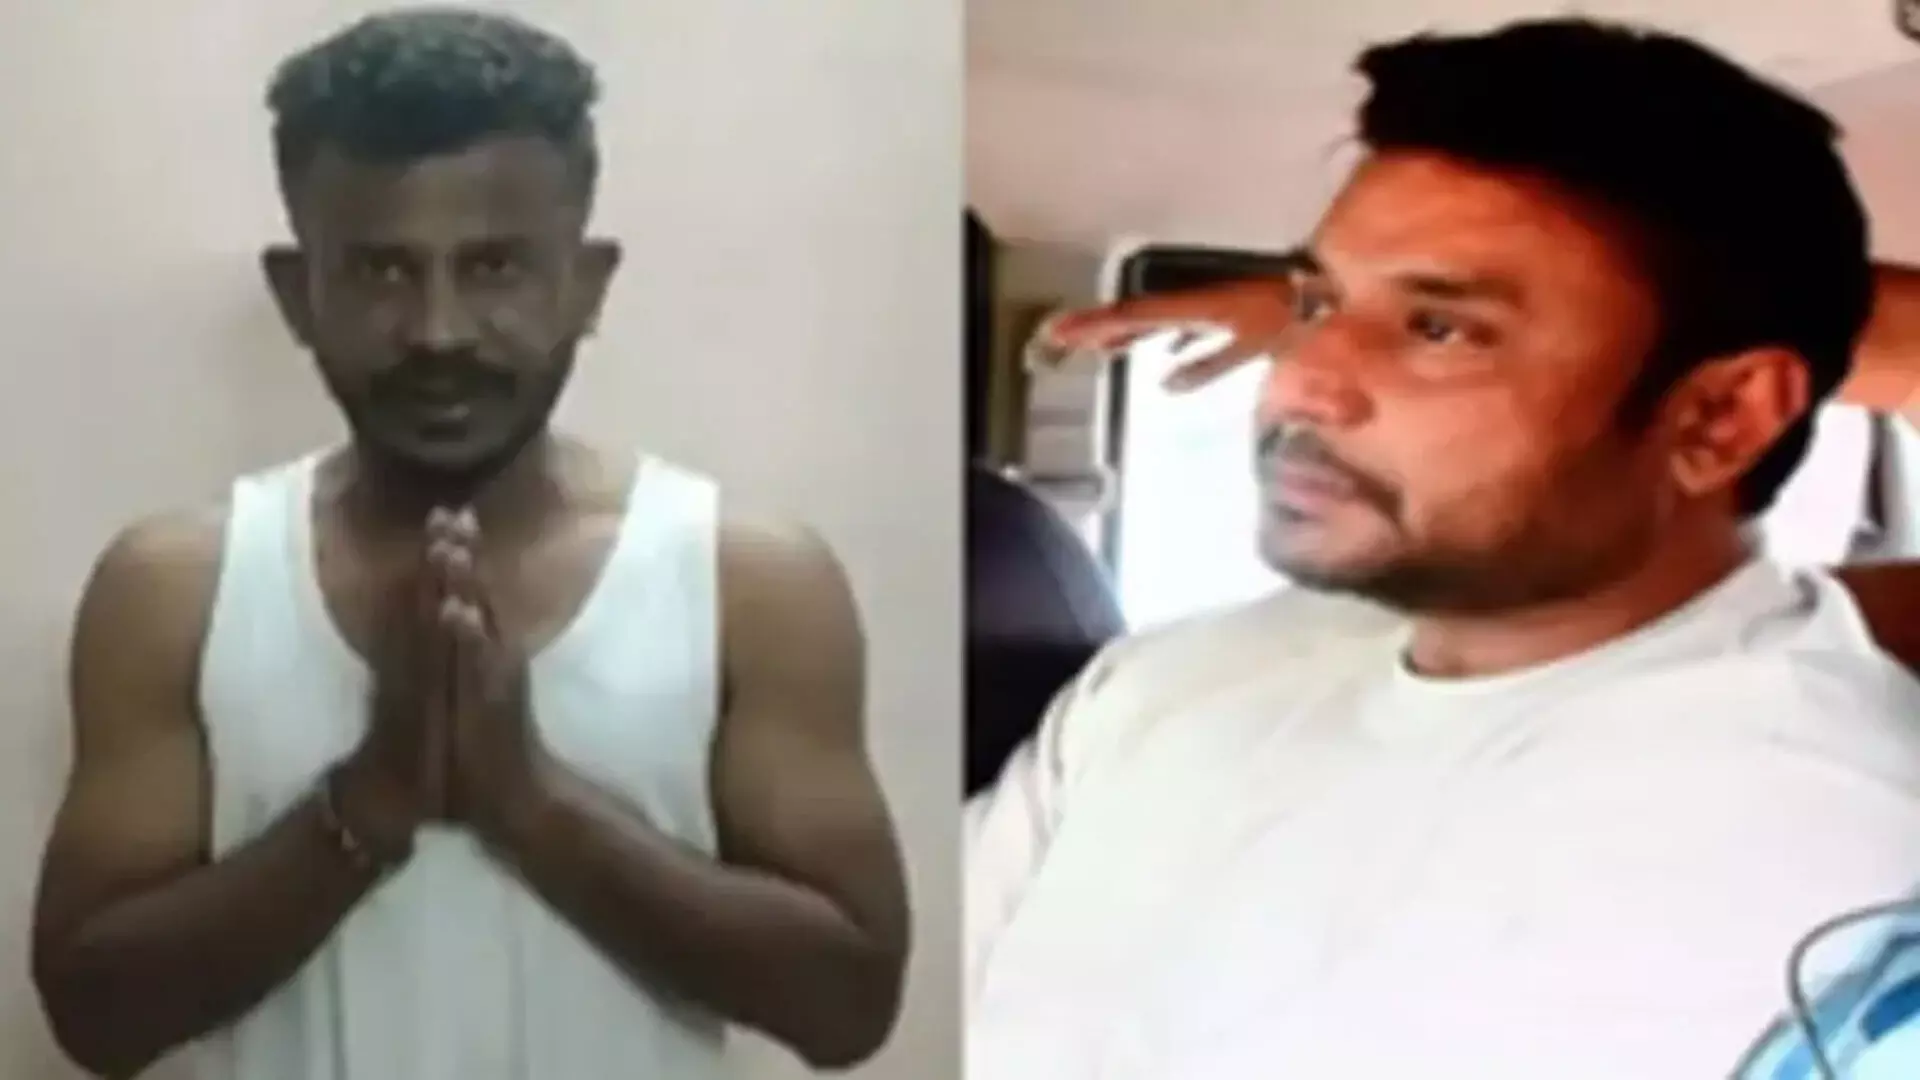 Renukaswamy murder: निर्माता को धमकी देने के आरोप में पुलिस ने दर्शन के प्रशंसक को किया गिरफ्तार